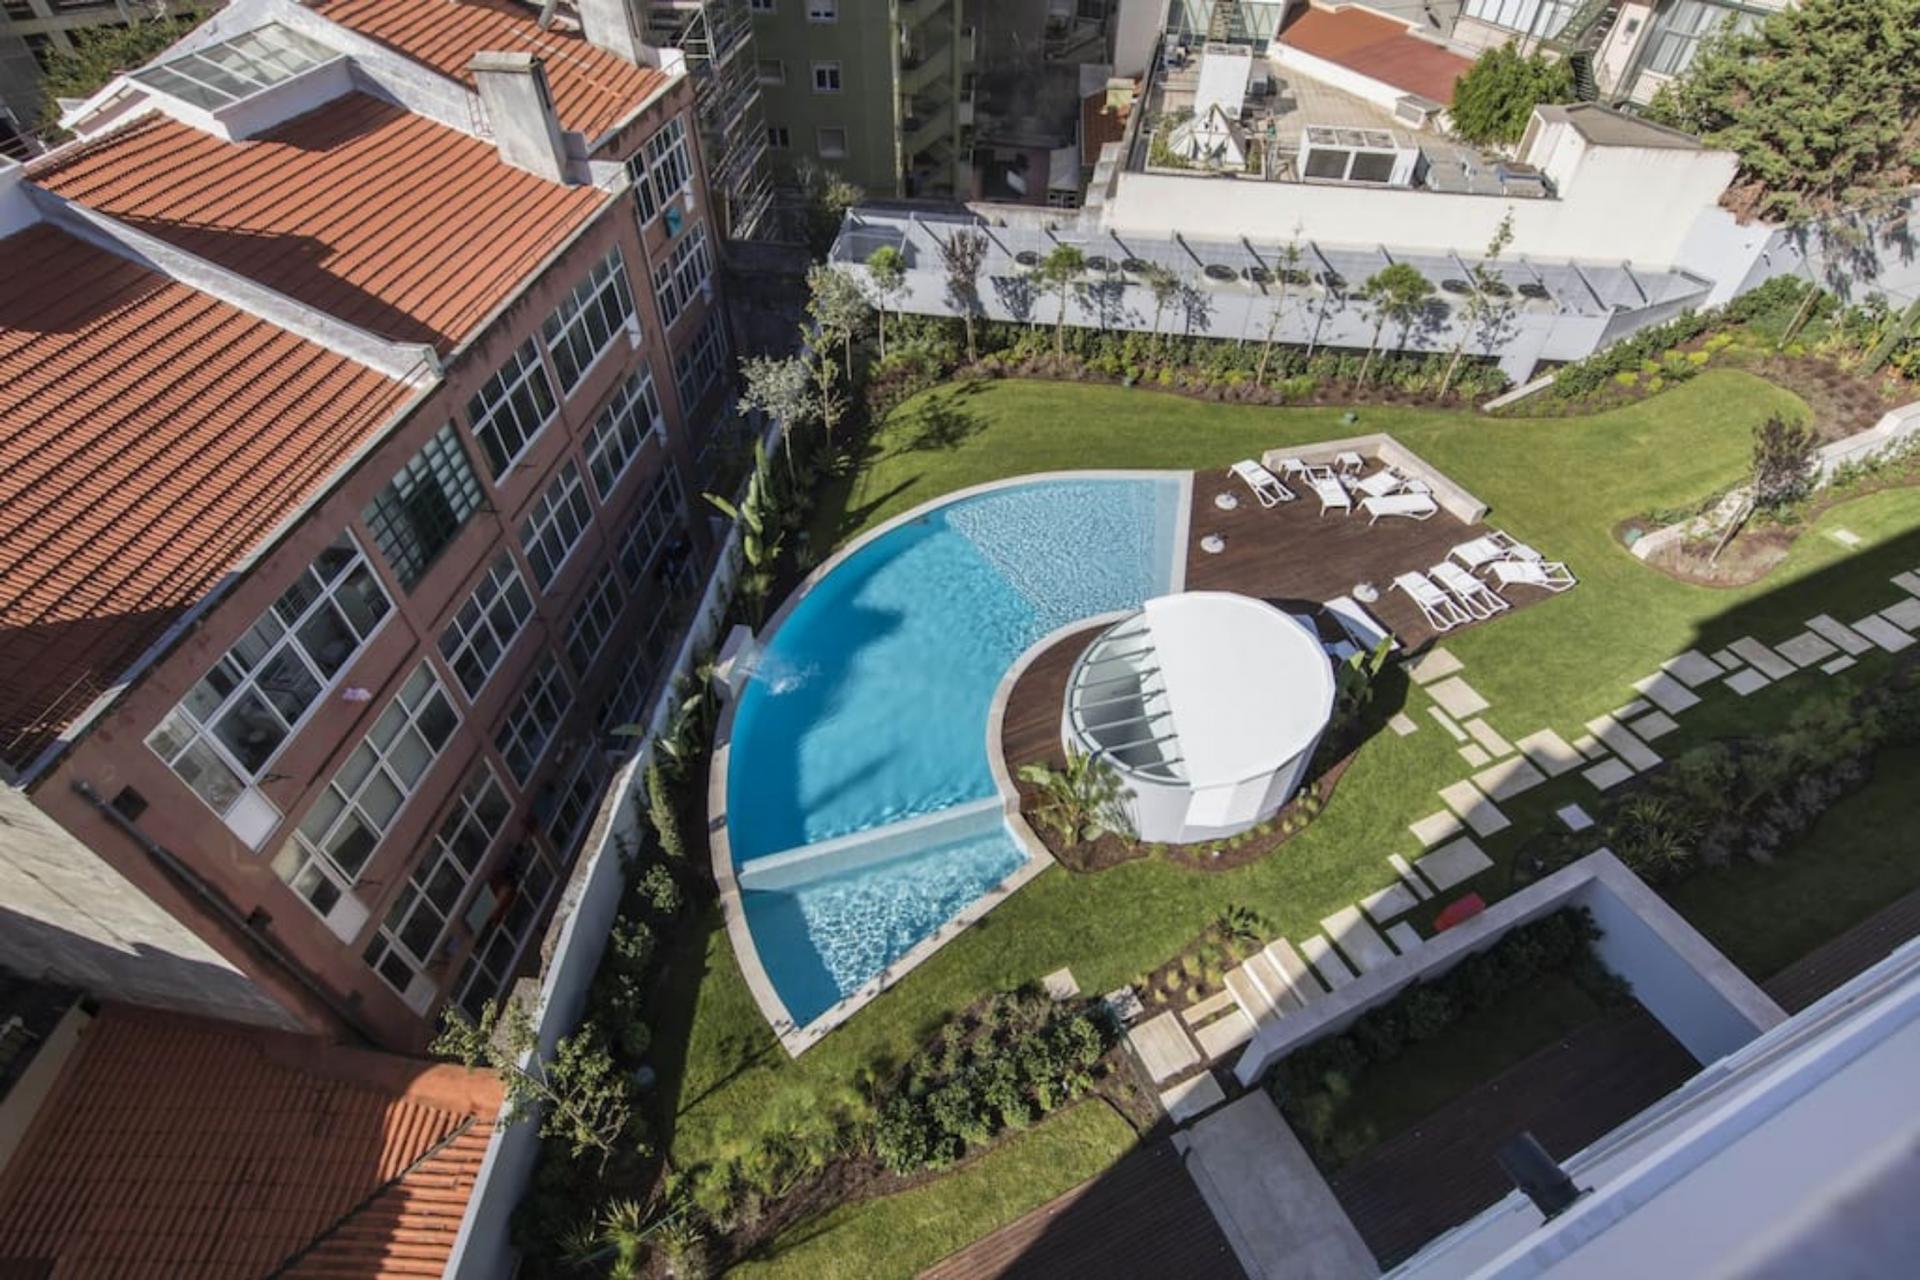 Duque de Loulé- 2 Bedroom Apartment with pool in Lisbon